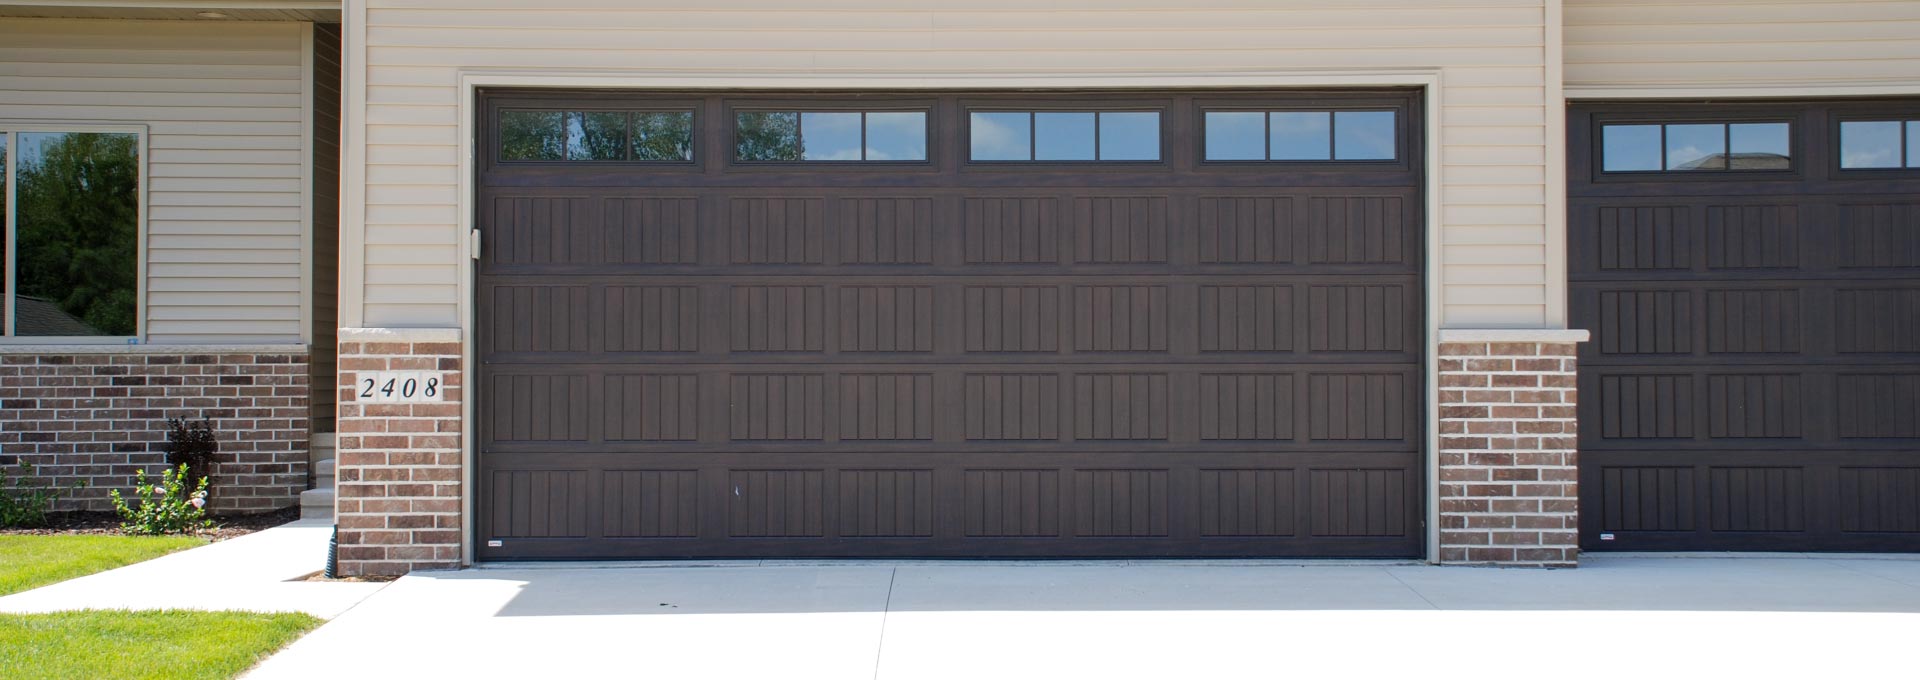 Insulated Garage Doors Thermacore Collection Overhead Door